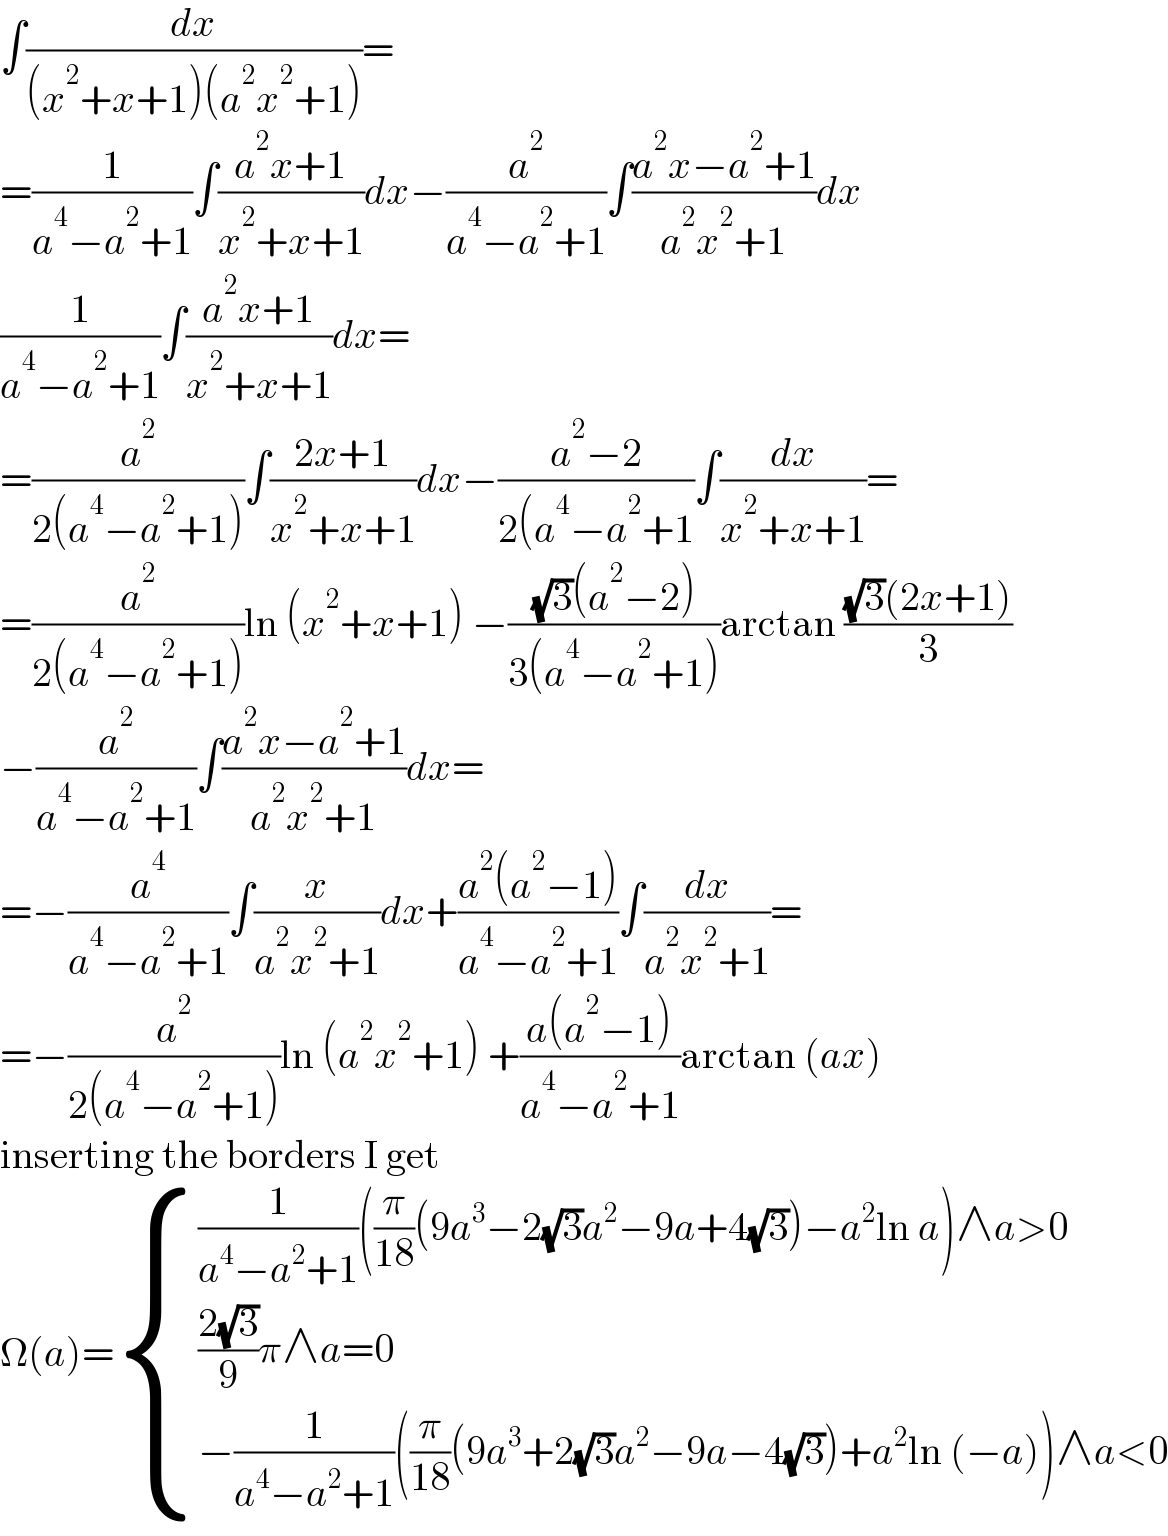 ∫(dx/((x^2 +x+1)(a^2 x^2 +1)))=  =(1/(a^4 −a^2 +1))∫((a^2 x+1)/(x^2 +x+1))dx−(a^2 /(a^4 −a^2 +1))∫((a^2 x−a^2 +1)/(a^2 x^2 +1))dx  (1/(a^4 −a^2 +1))∫((a^2 x+1)/(x^2 +x+1))dx=  =(a^2 /(2(a^4 −a^2 +1)))∫((2x+1)/(x^2 +x+1))dx−((a^2 −2)/(2(a^4 −a^2 +1))∫(dx/(x^2 +x+1))=  =(a^2 /(2(a^4 −a^2 +1)))ln (x^2 +x+1) −(((√3)(a^2 −2))/(3(a^4 −a^2 +1)))arctan (((√3)(2x+1))/3)  −(a^2 /(a^4 −a^2 +1))∫((a^2 x−a^2 +1)/(a^2 x^2 +1))dx=  =−(a^4 /(a^4 −a^2 +1))∫(x/(a^2 x^2 +1))dx+((a^2 (a^2 −1))/(a^4 −a^2 +1))∫(dx/(a^2 x^2 +1))=  =−(a^2 /(2(a^4 −a^2 +1)))ln (a^2 x^2 +1) +((a(a^2 −1))/(a^4 −a^2 +1))arctan (ax)  inserting the borders I get  Ω(a)= { (((1/(a^4 −a^2 +1))((π/(18))(9a^3 −2(√3)a^2 −9a+4(√3))−a^2 ln a)∧a>0)),((((2(√3))/9)π∧a=0)),((−(1/(a^4 −a^2 +1))((π/(18))(9a^3 +2(√3)a^2 −9a−4(√3))+a^2 ln (−a))∧a<0)) :}  